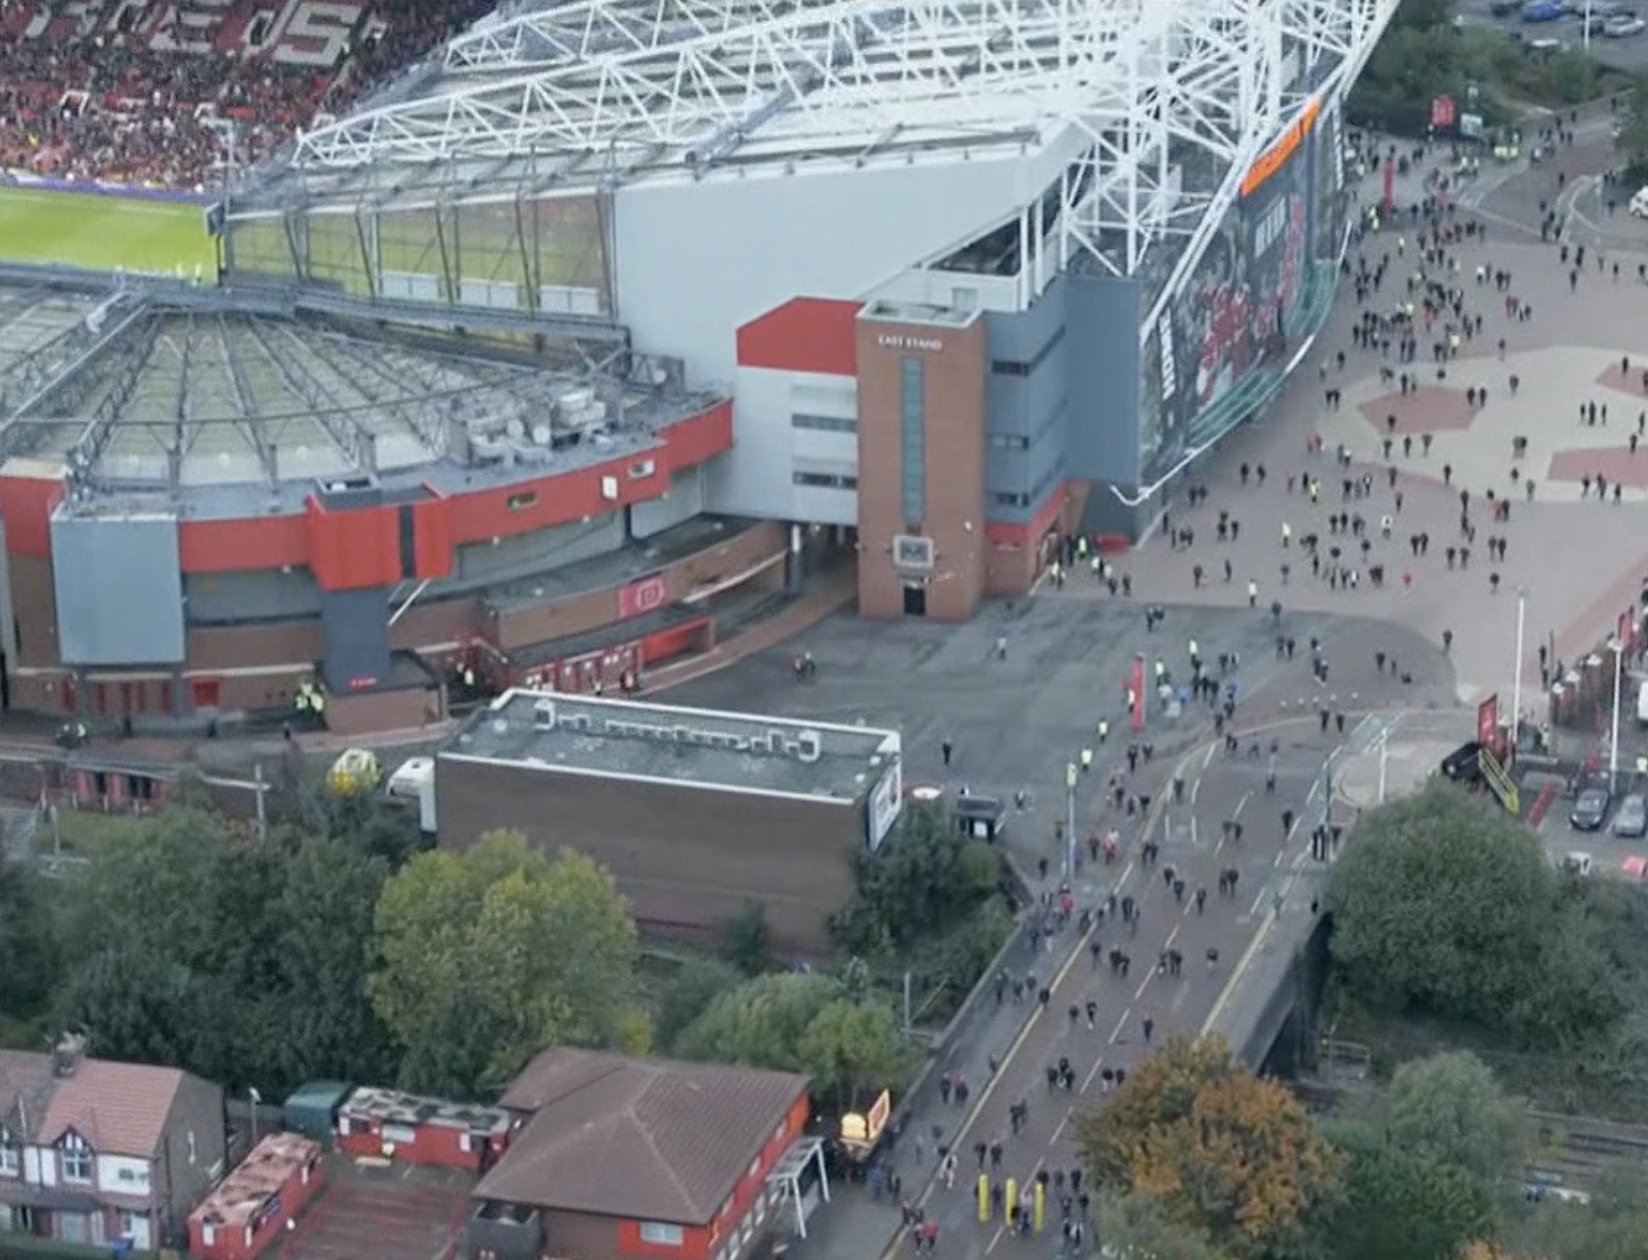 Một góc máy trên cao đã ghi lại được cảnh cổ động viên Manchester United lũ lượt rời sân Old Trafford trong giờ nghỉ giữa hiệp trận đấu Manchester United - Liverpool tối 25.10. Ảnh: ESPN